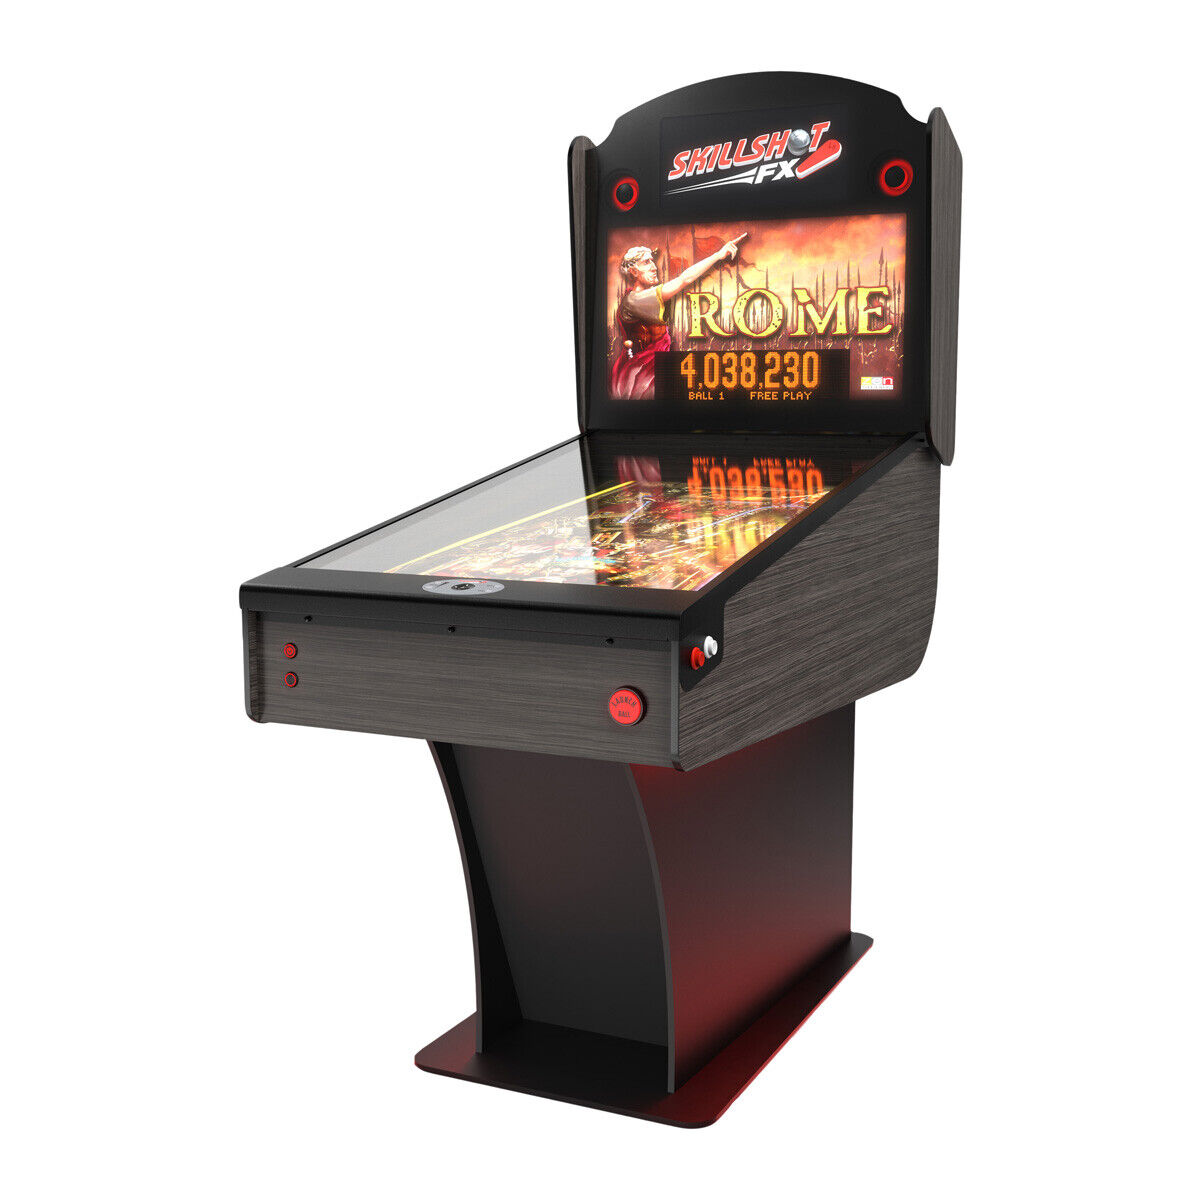 Skillshot Pinball - Skillshot FX Digital Pinball Machine